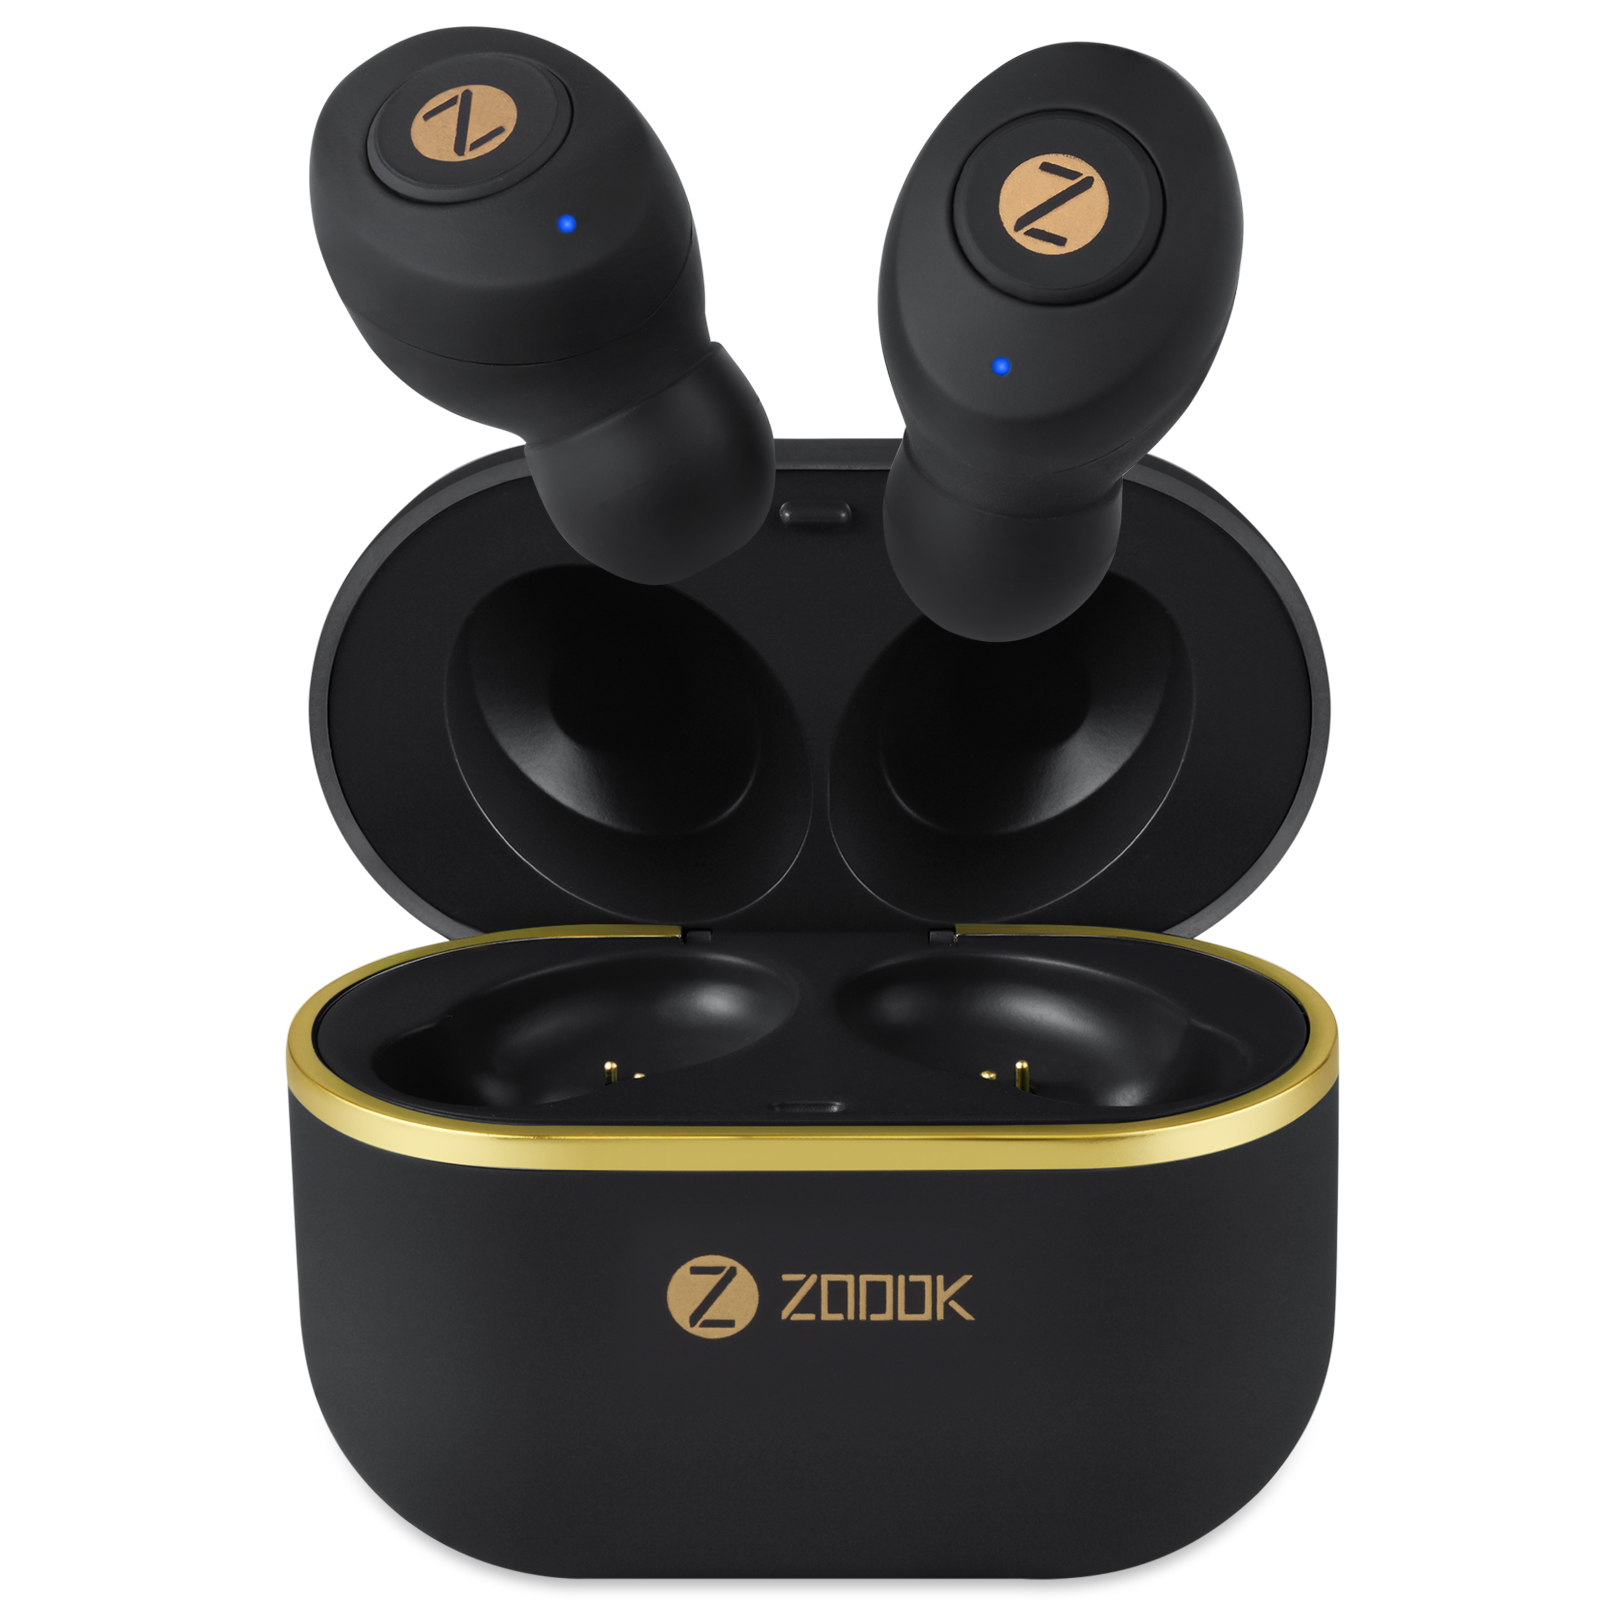 Zoook's,wireless ,headphones